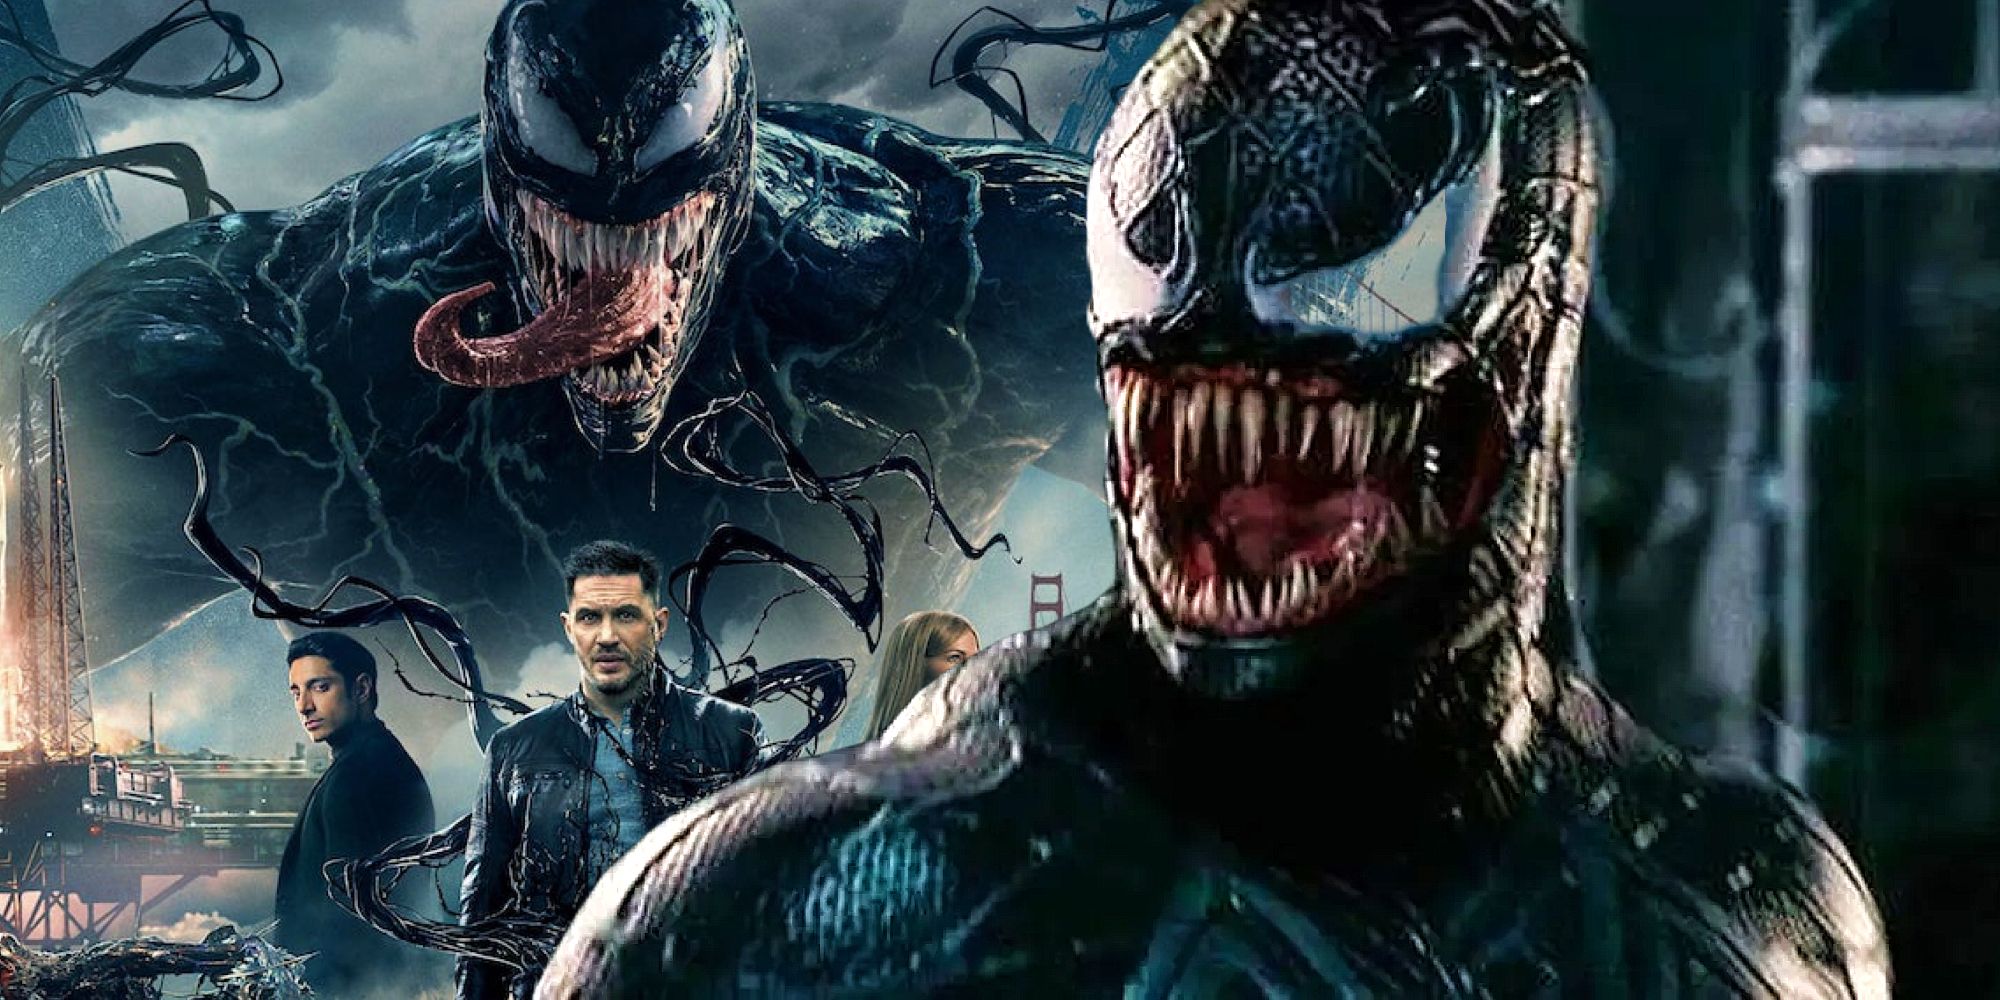 El animatrónico Venom no utilizado de Spider-Man 3 muestra cuán diferentes son ahora las películas de superhéroes